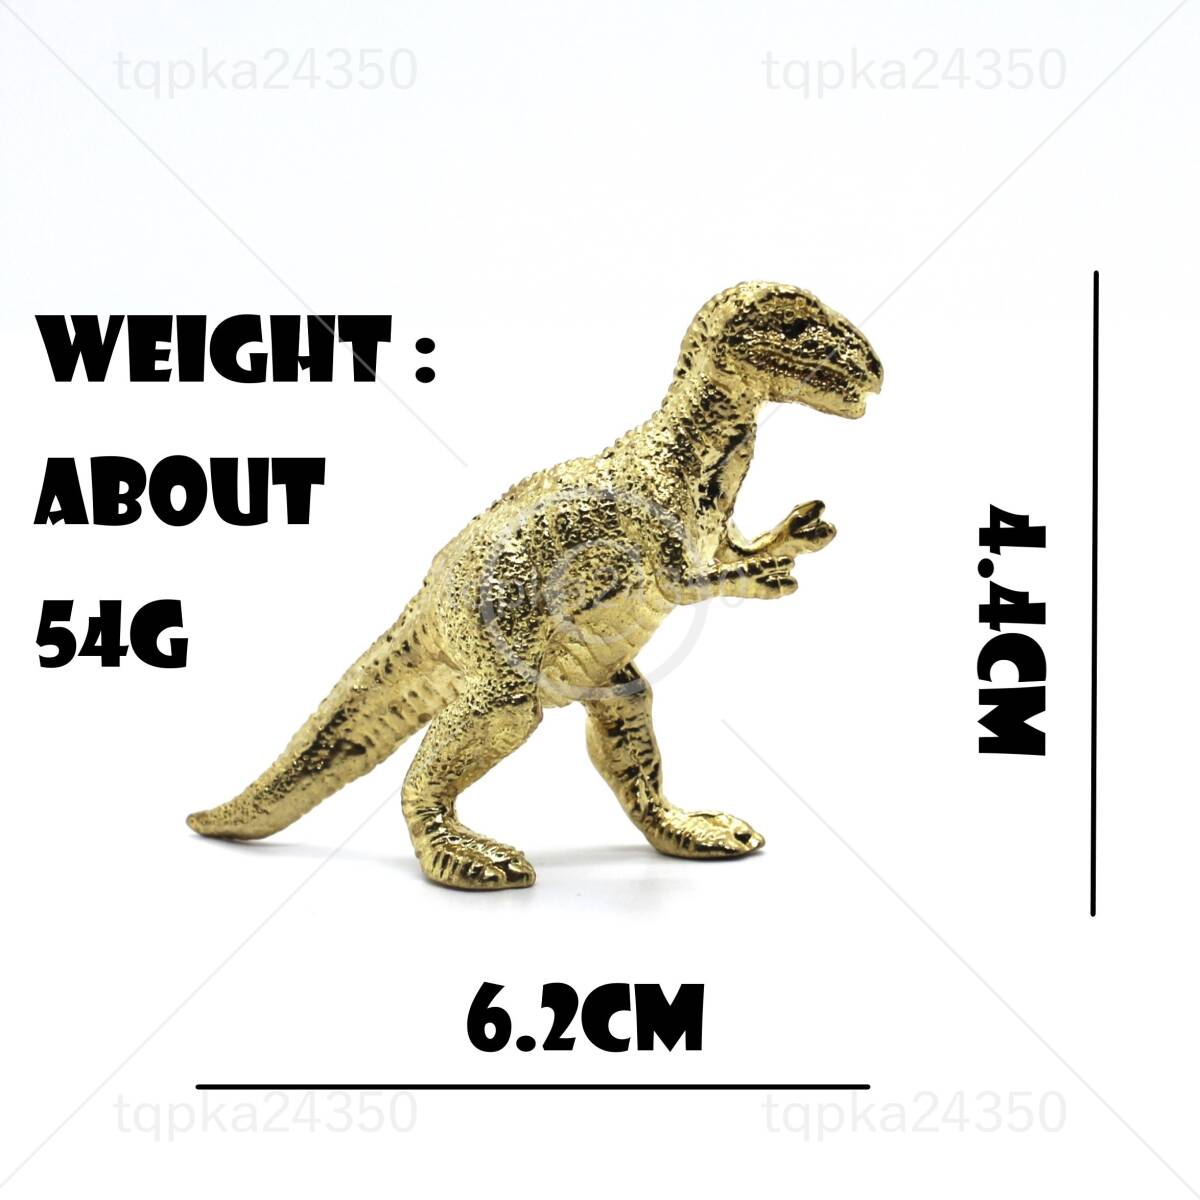 53.9g T・REX ティラノ サウルス レックス ゴールド ジュラシック 恐竜 動物 置物 置き物 金運 おもちゃ 真鍮 金属 銅 TY53.9 go